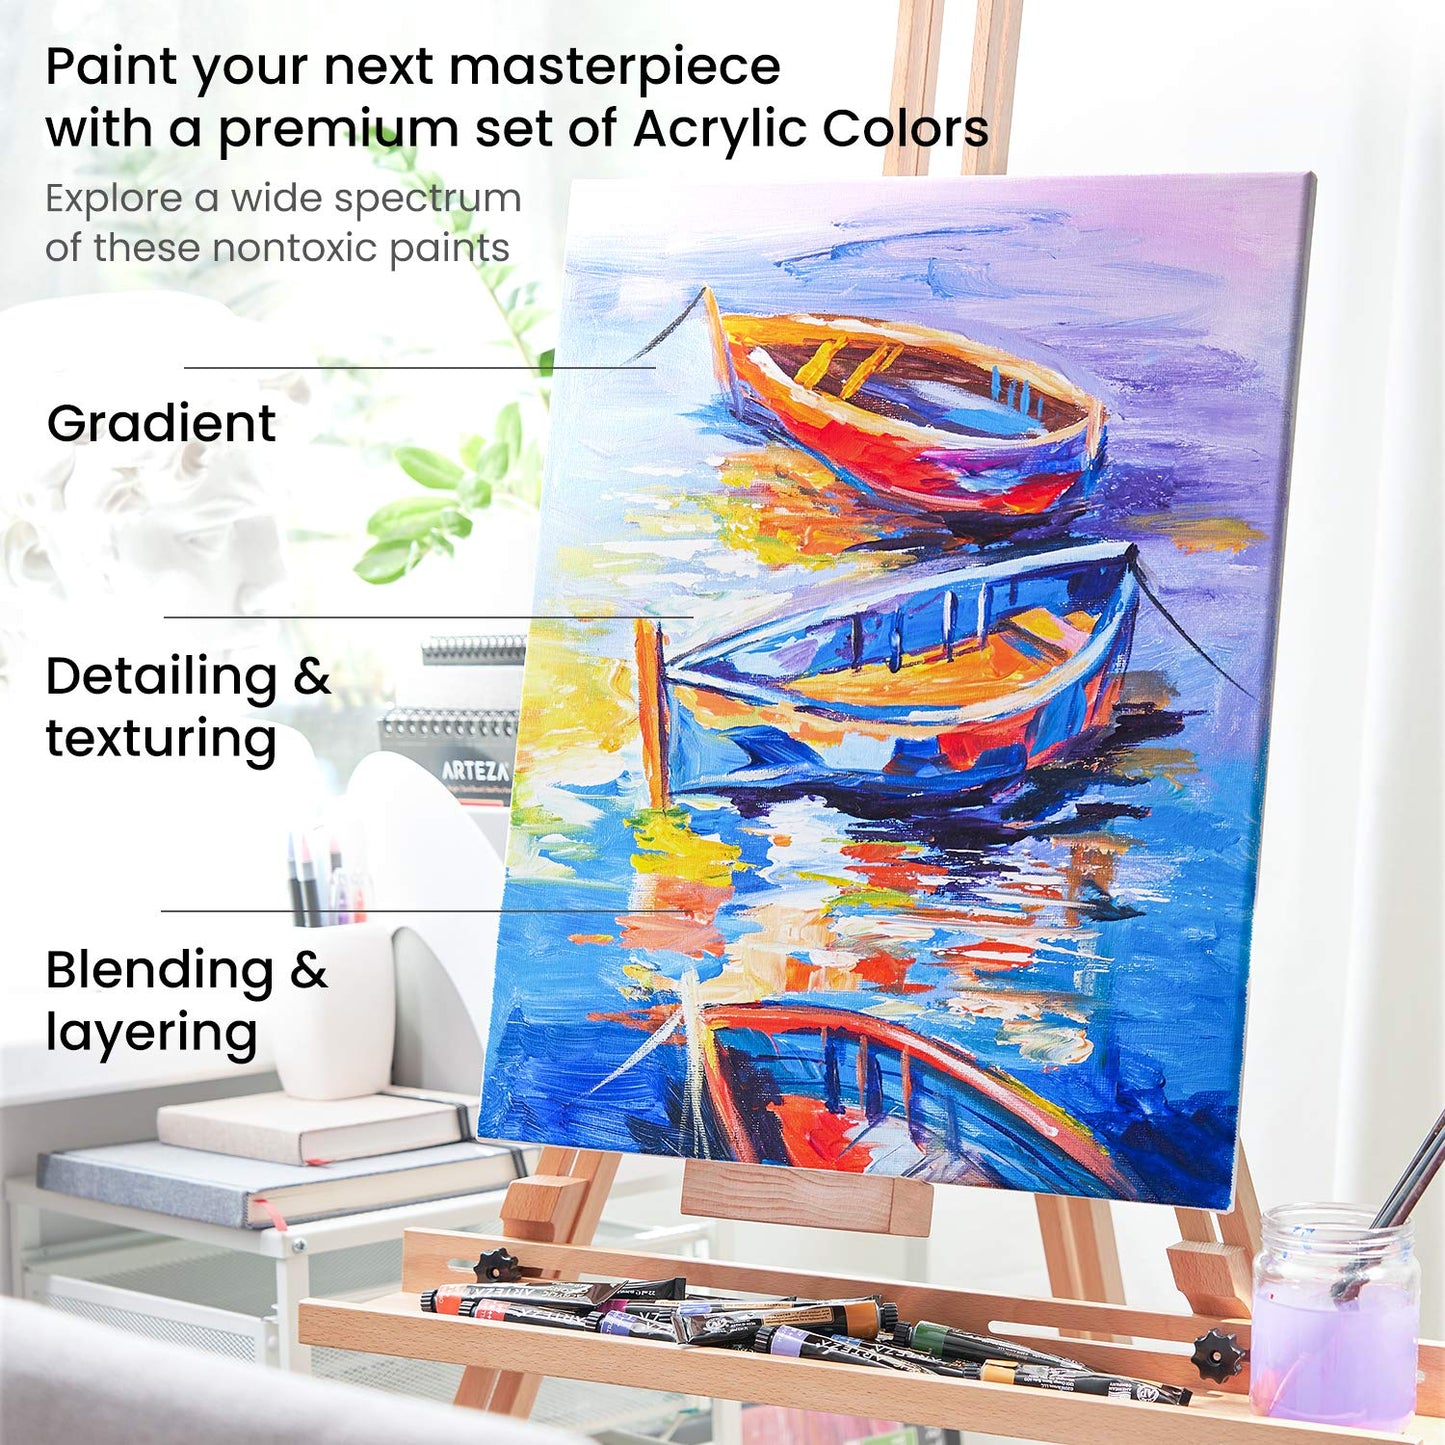 ARTEZA Acrylic Paint, Set of 60 Colors, 0.74 oz/22 ml Tubes, includes 5 Metallic Colors, Rich Pigments, Non-Fading, Non-Toxic Paints for Artist &